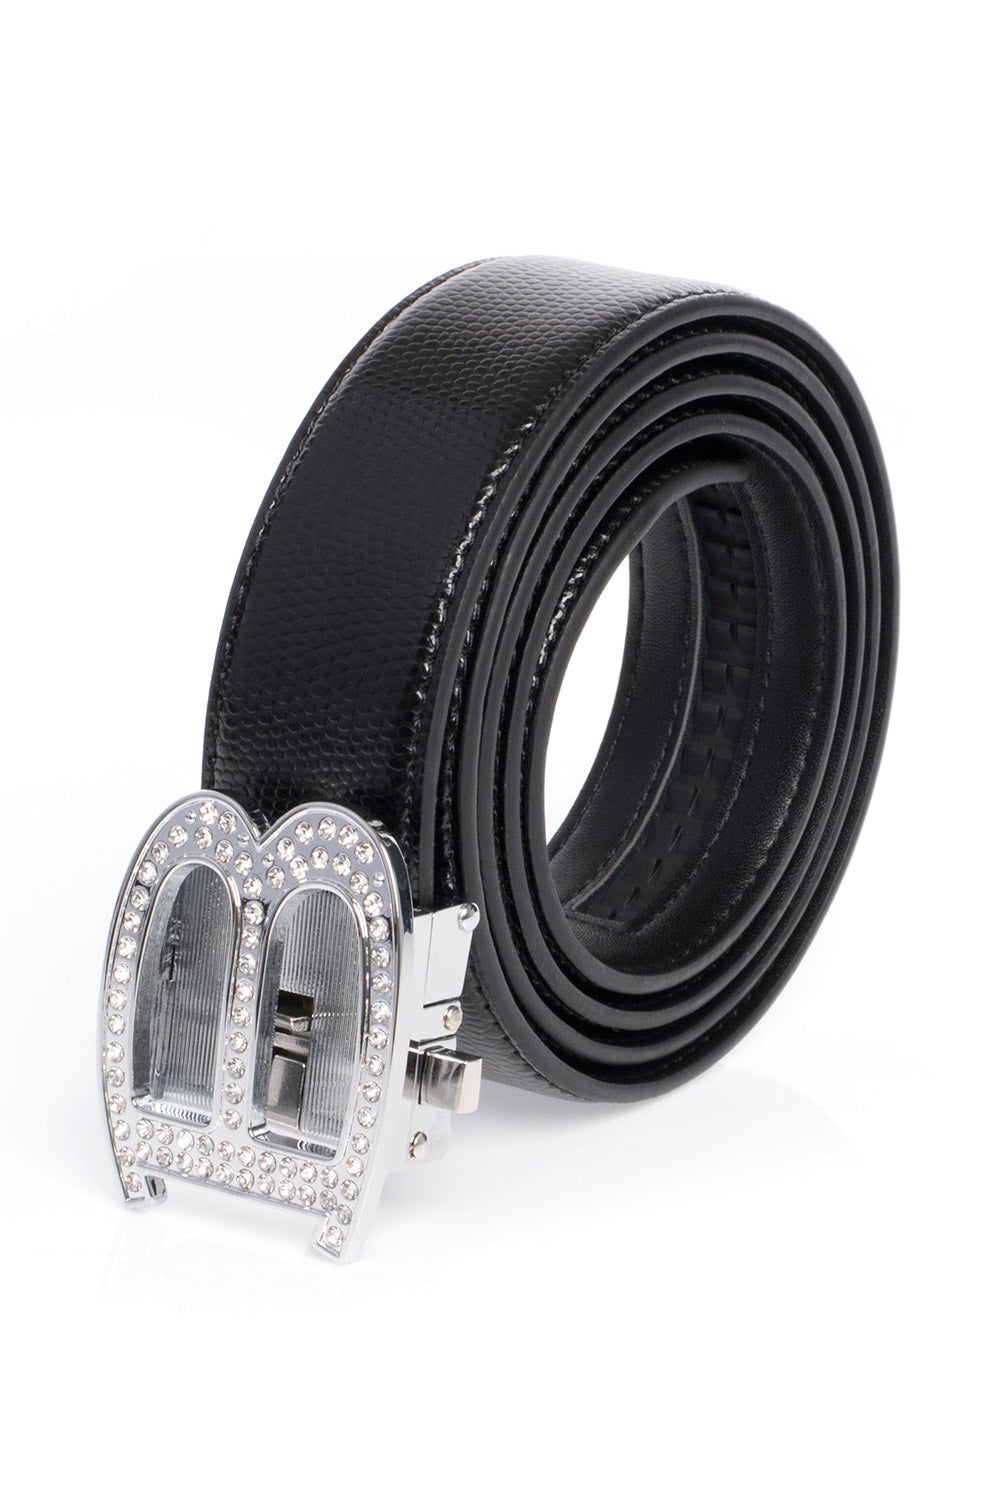 Barabas "B" Shiny Black/Black Snake Adjustable Luxury Leather Dress Belt